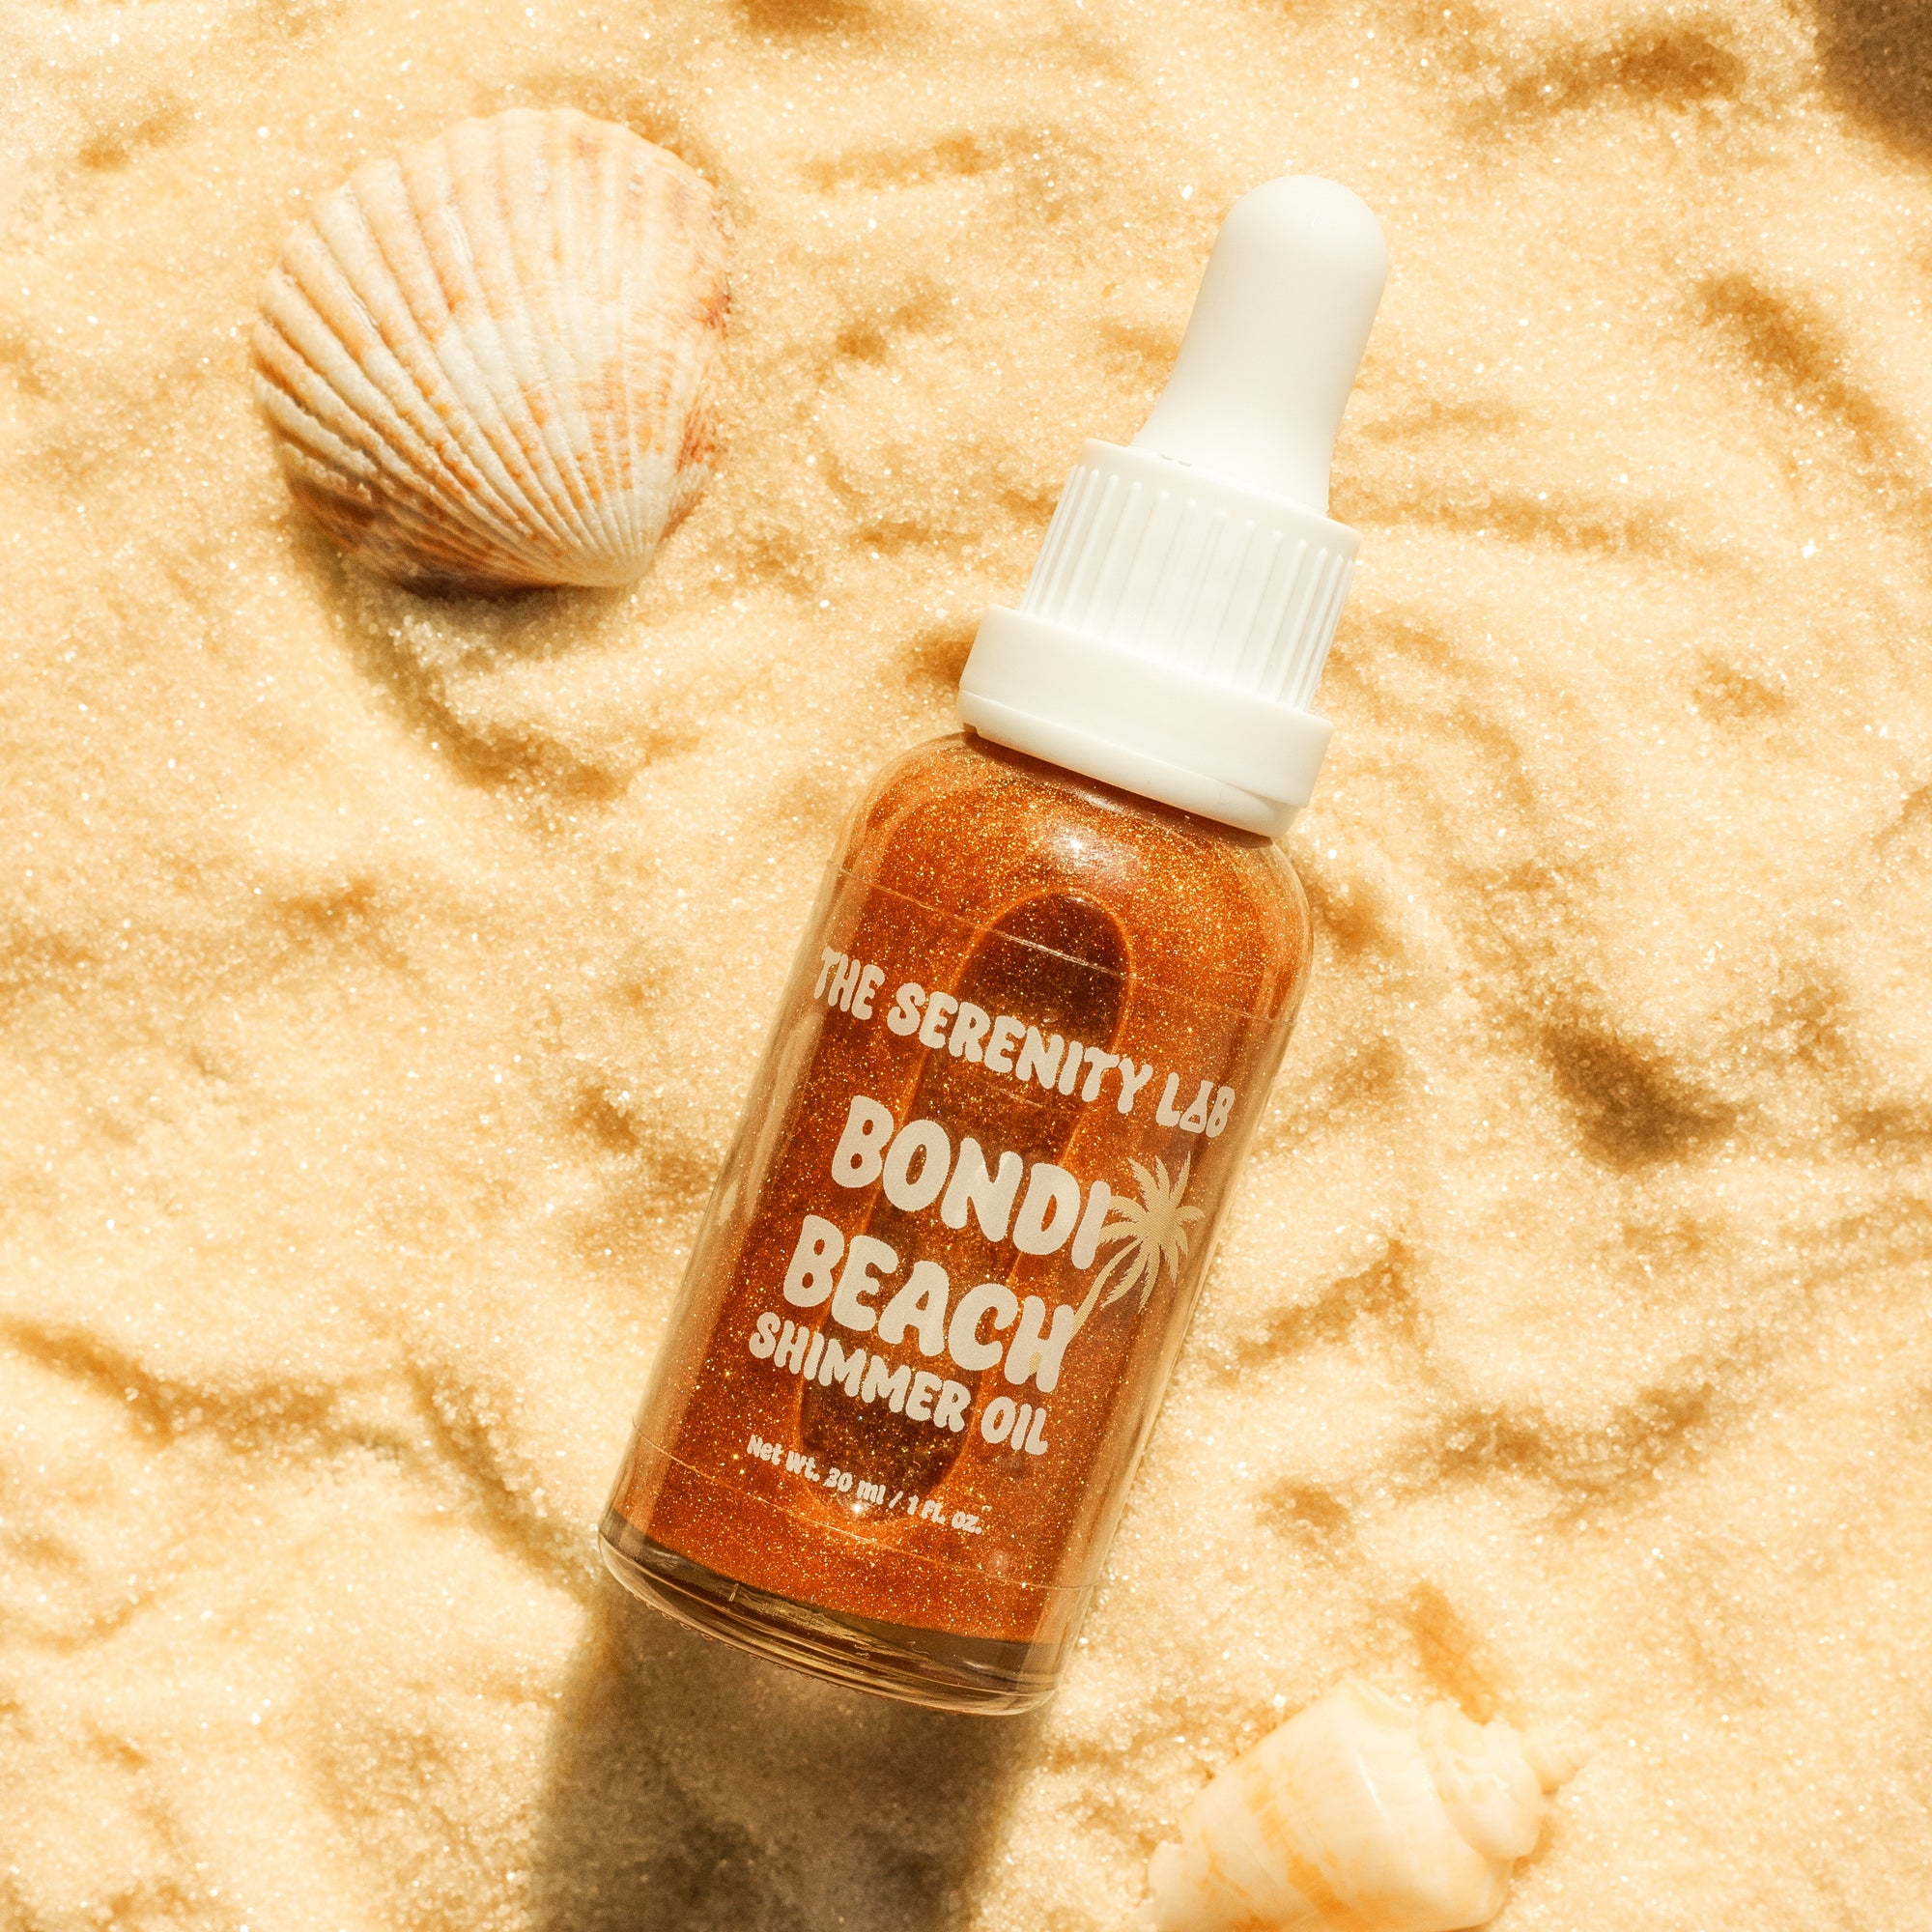 Bondi Beach Body Shimmer Oil - The Serenity Lab